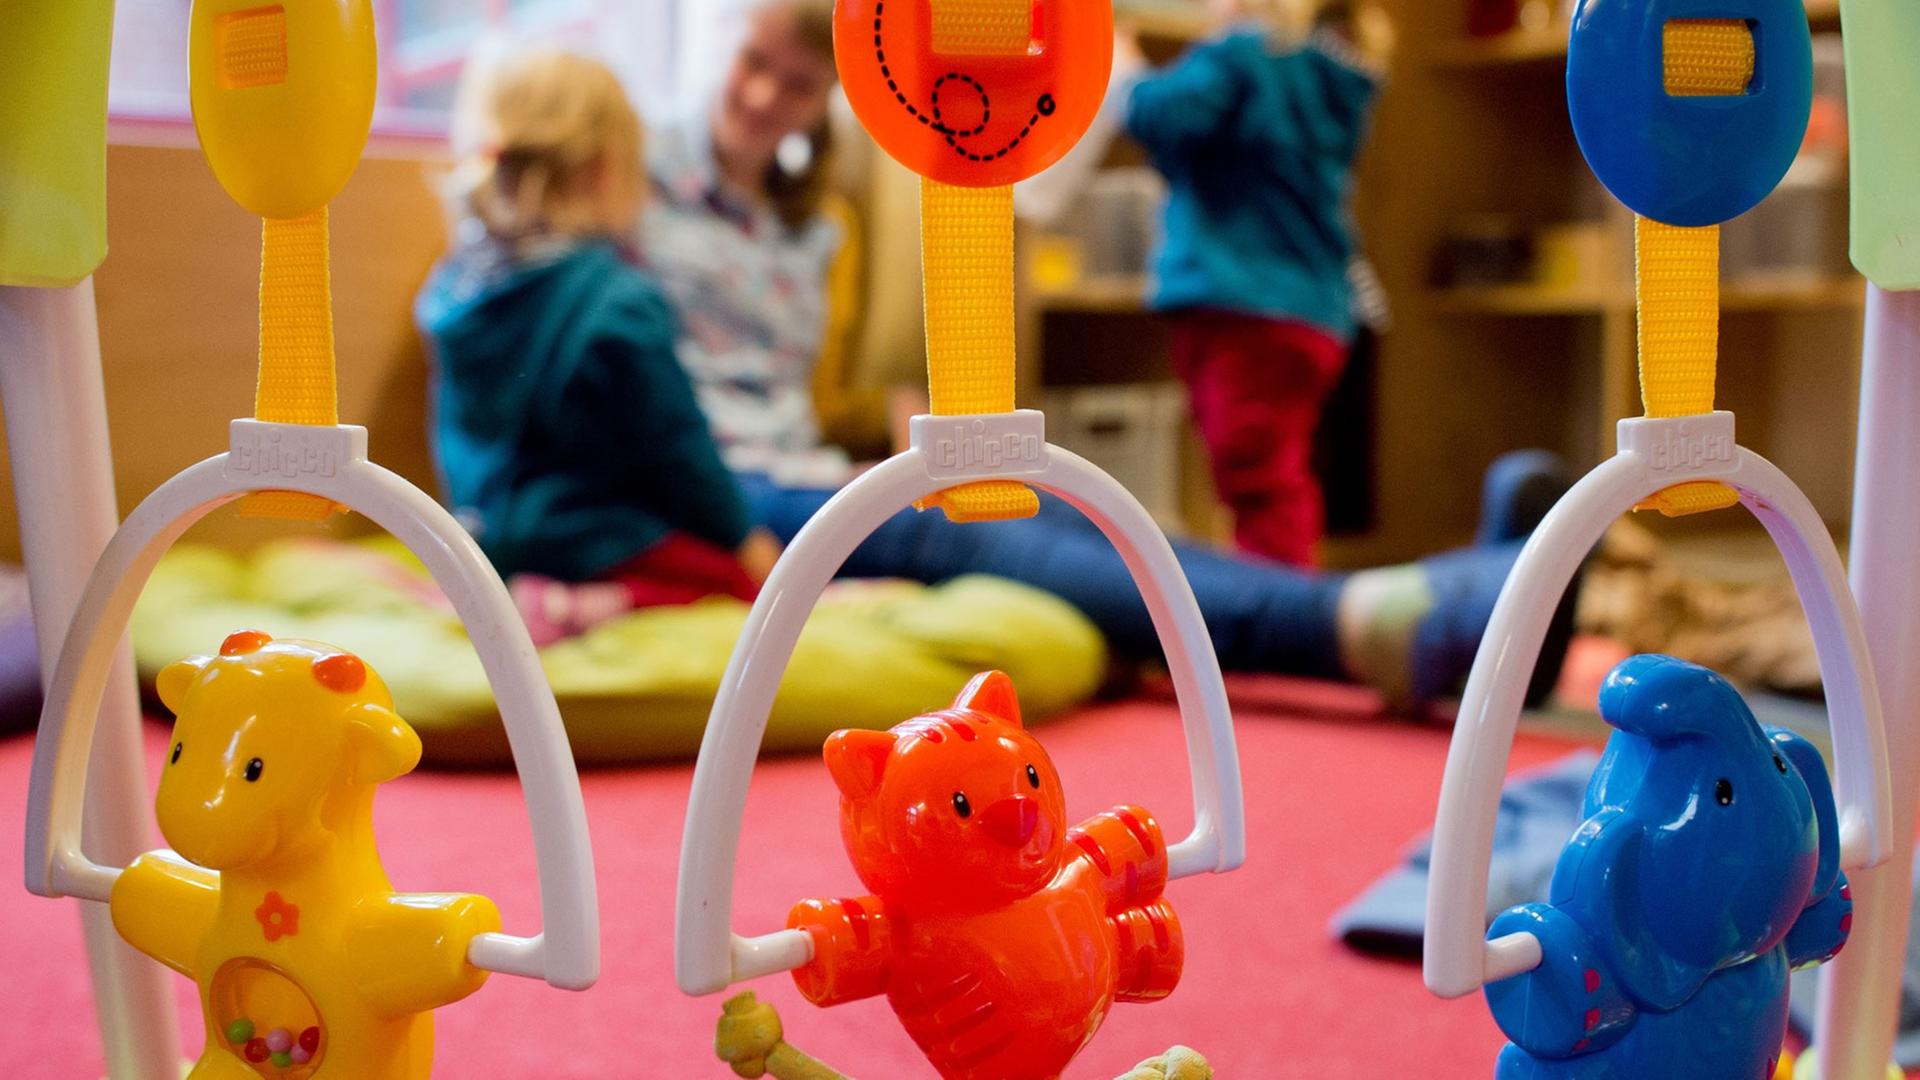 Kinderspielzeug hängt an einem Rahmen. Im Hintergrund spielt eine Erzieherin mit zwei kleinen Kindern